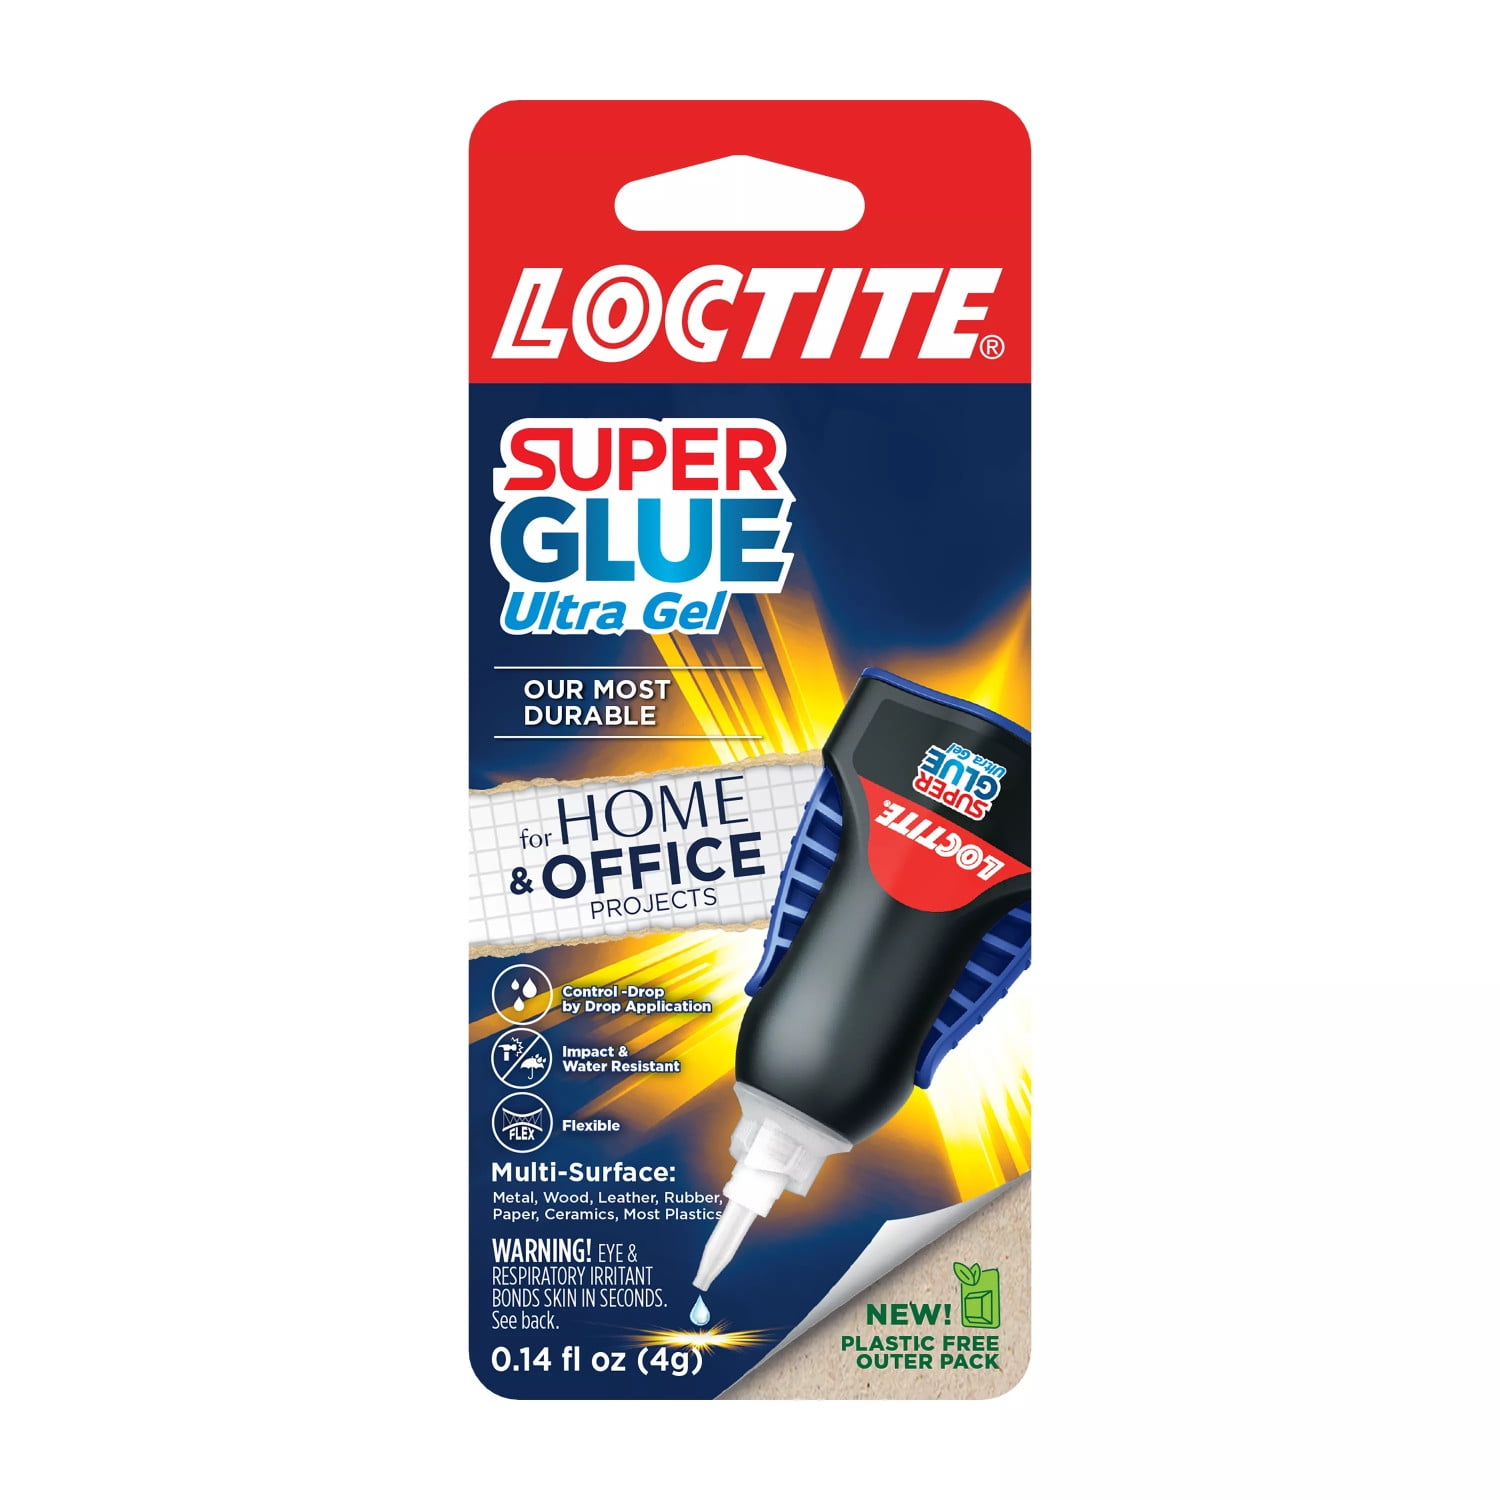 The Super Glue Corp. Super Glue Remover .17 oz. bottle. # 11710361 NEW